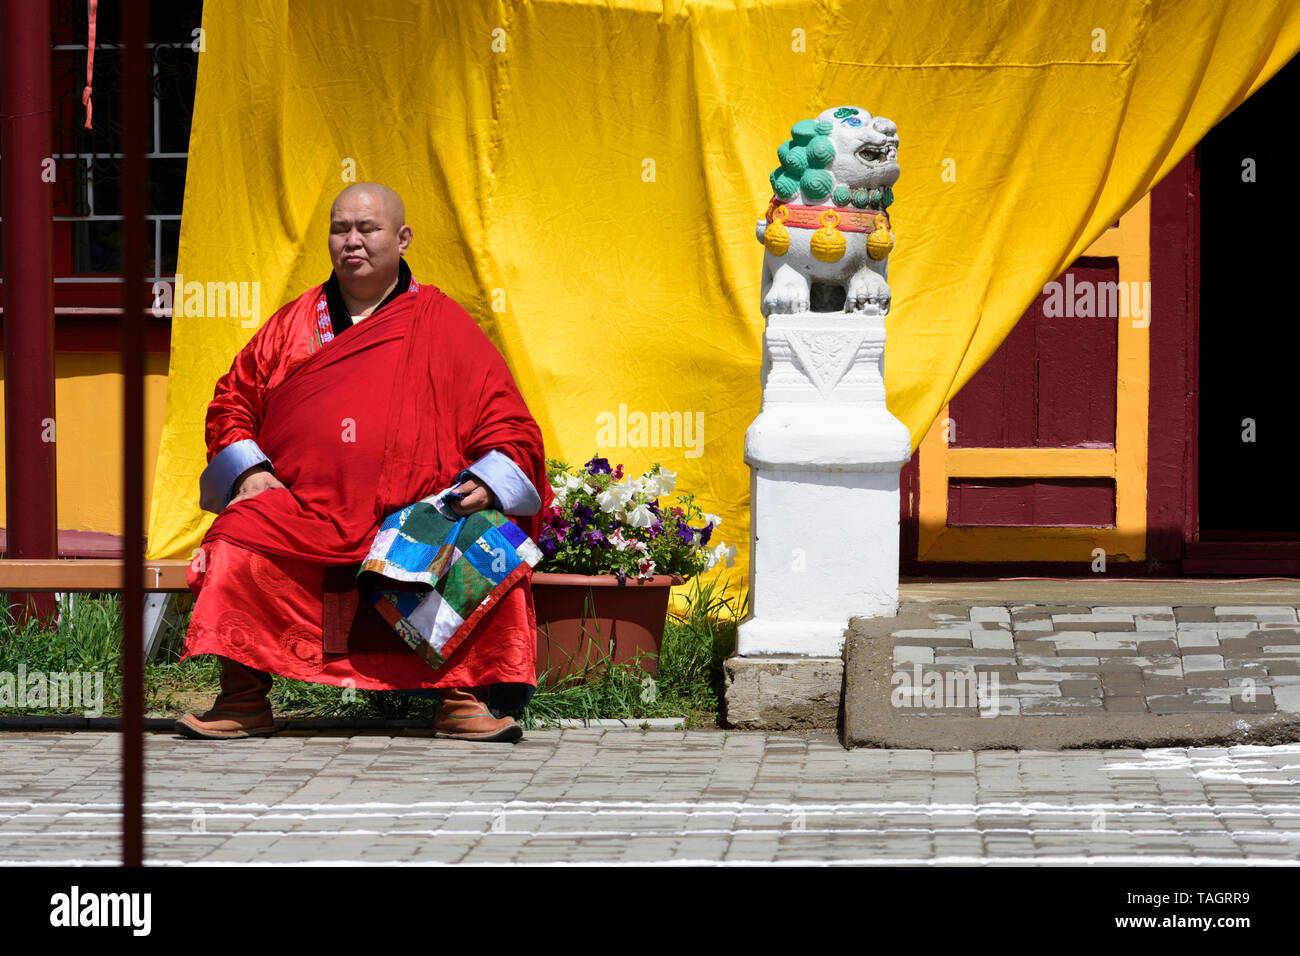 Tsam (Cham) religione mask dance nel monastero Dashchoilin, Ulaanbaatar, in Mongolia.Lama attende per la cerimonia Foto Stock